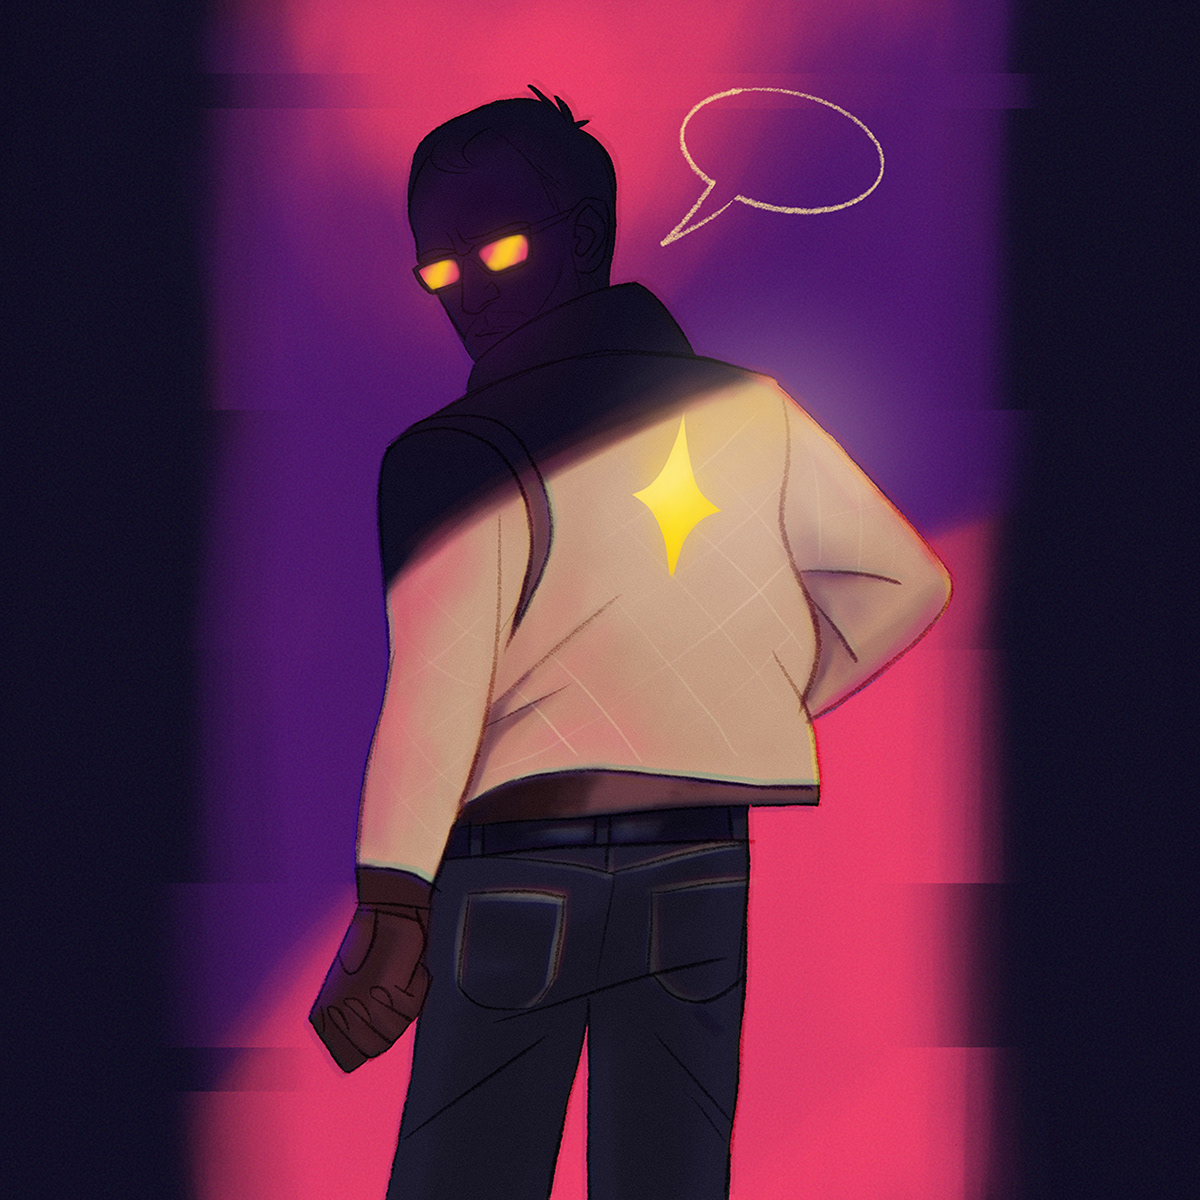 Cyberpunk jacket man neon noir person standing